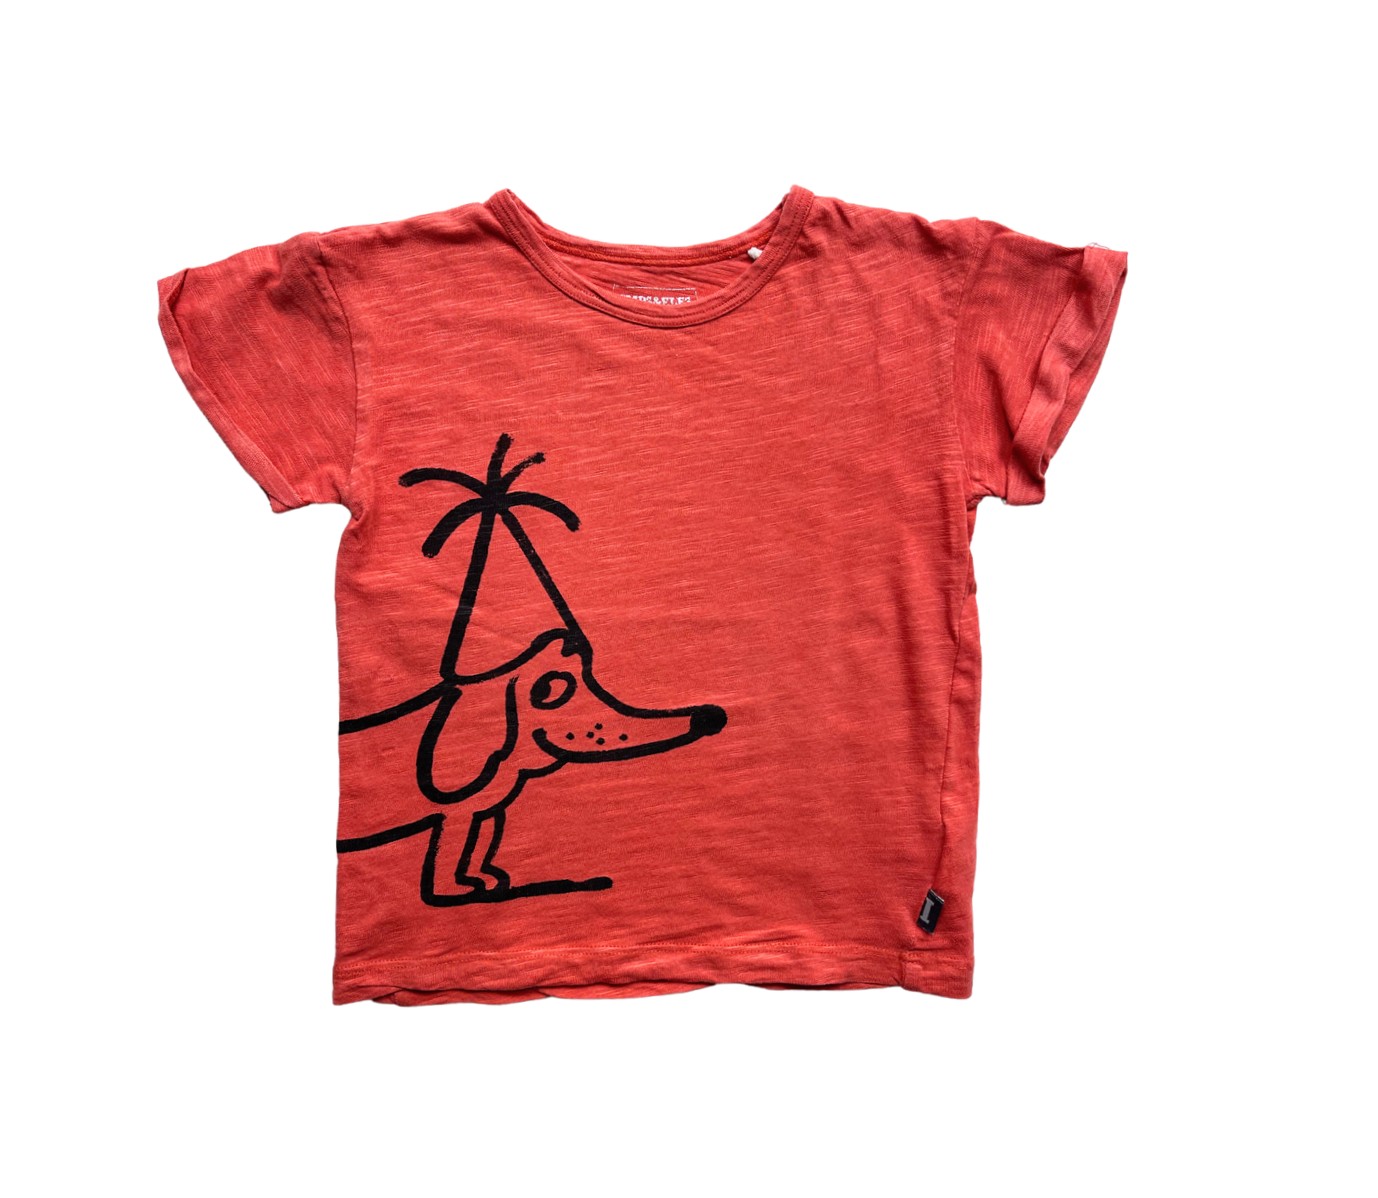 IMP’S & ELF’S - T-shirt rouge motif chien - 3 ans